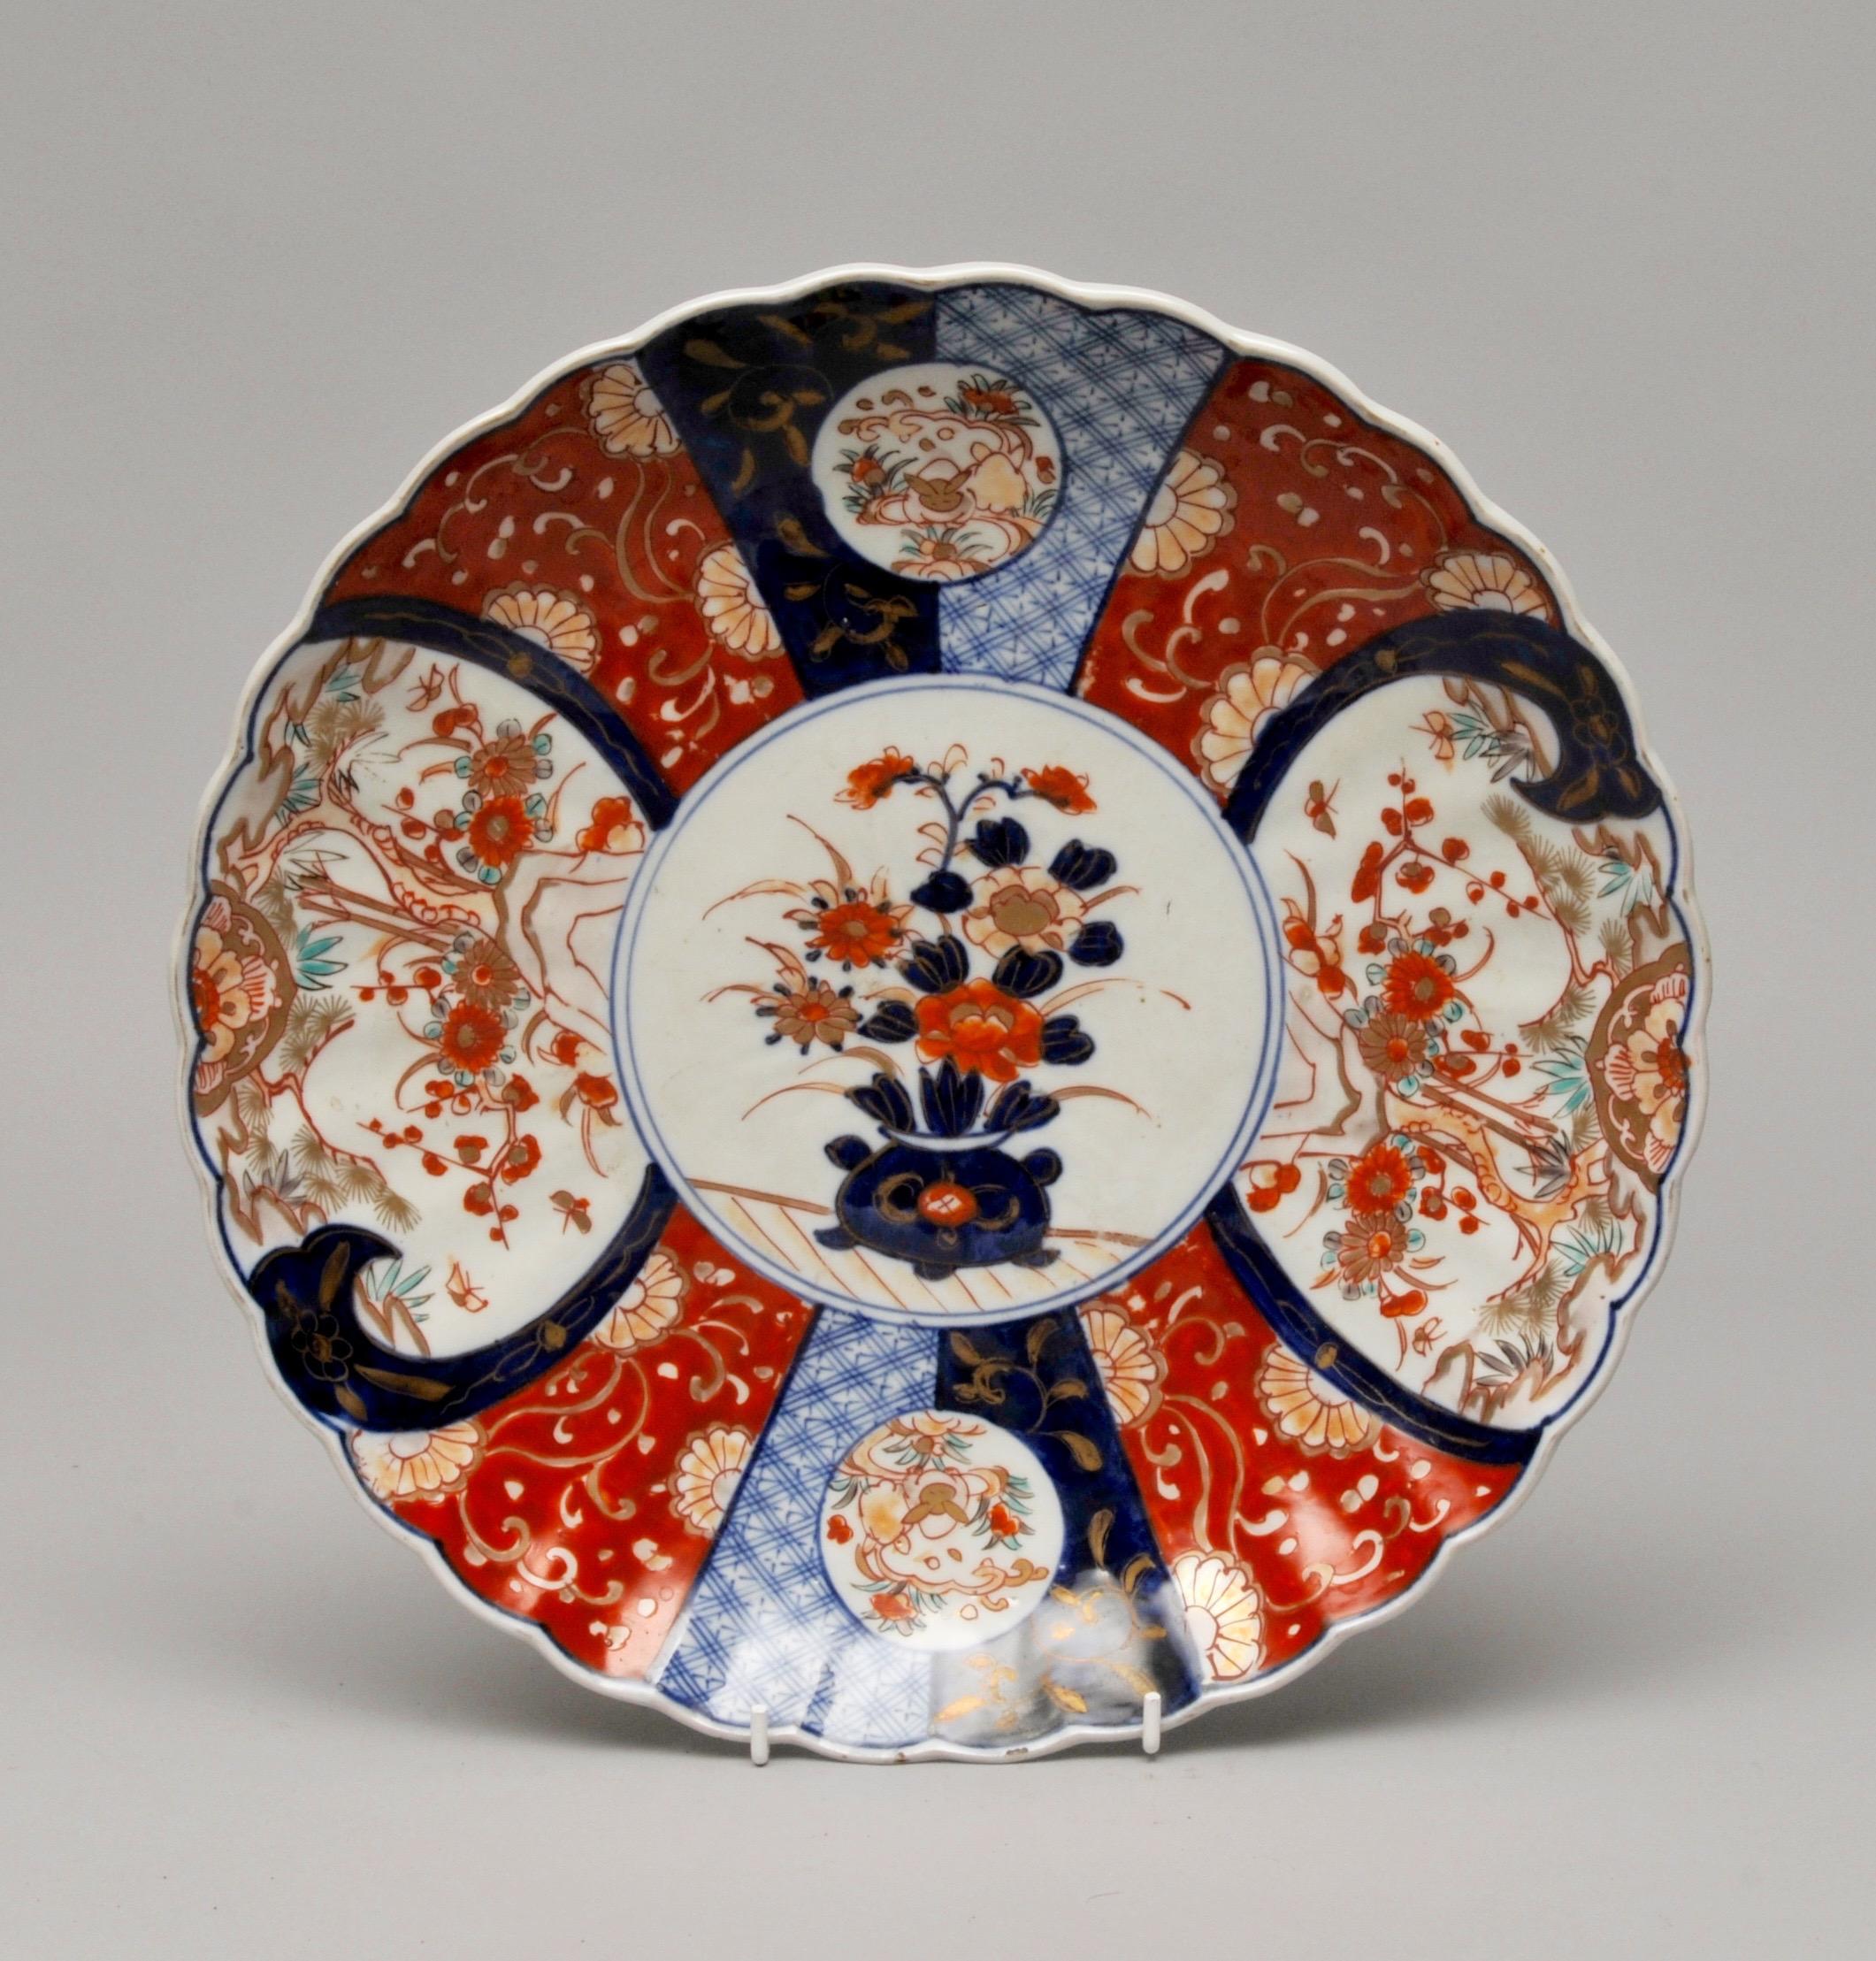 Assiette de présentation japonaise Imari, circa 1900

Mesure : D 30cm

La porcelaine d'Imari est le nom des produits en porcelaine japonais fabriqués dans la ville d'Arita, dans l'ancienne province de Hizen, au nord-ouest de Kyushu. Ils ont été